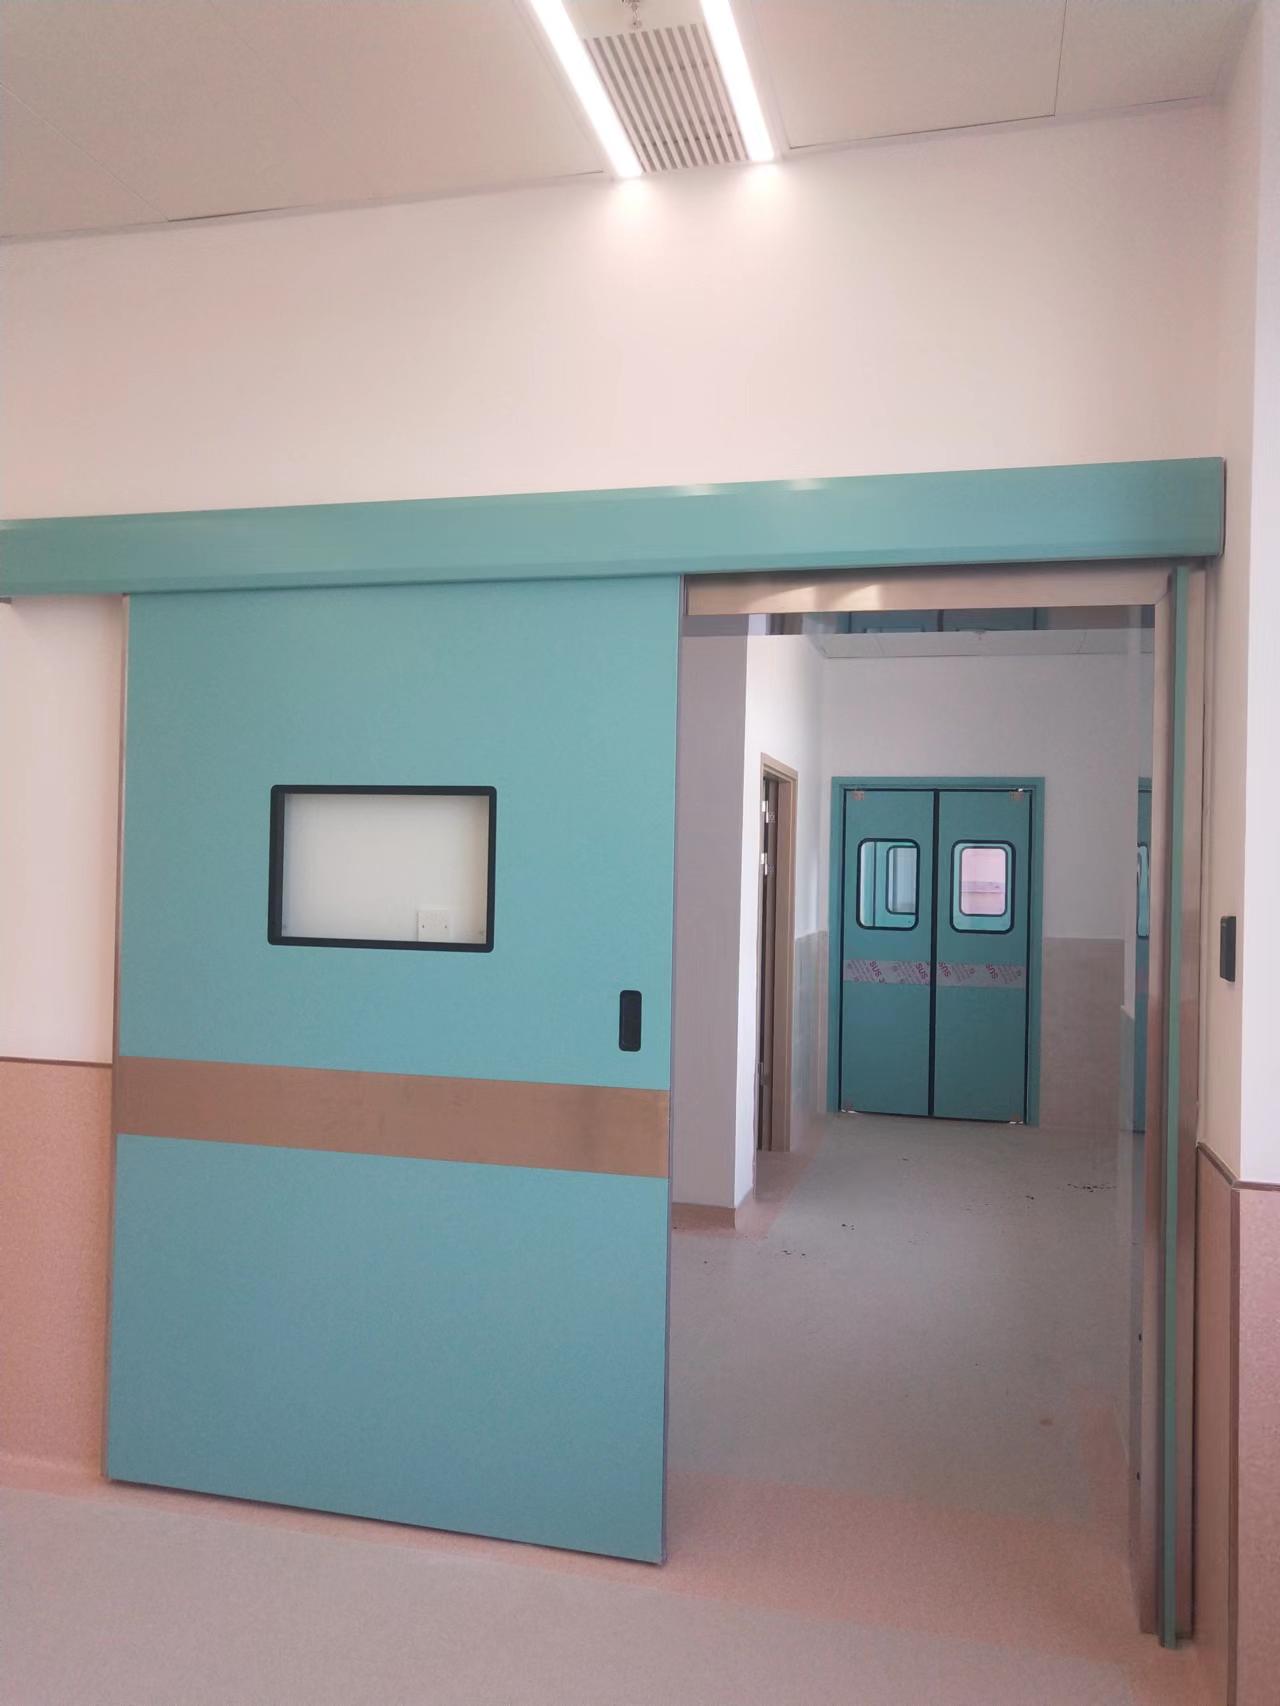 Νοσοκομείο Ερμητική αεροστεγές θωράκιση λειτουργίας συρόμενη πόρτα